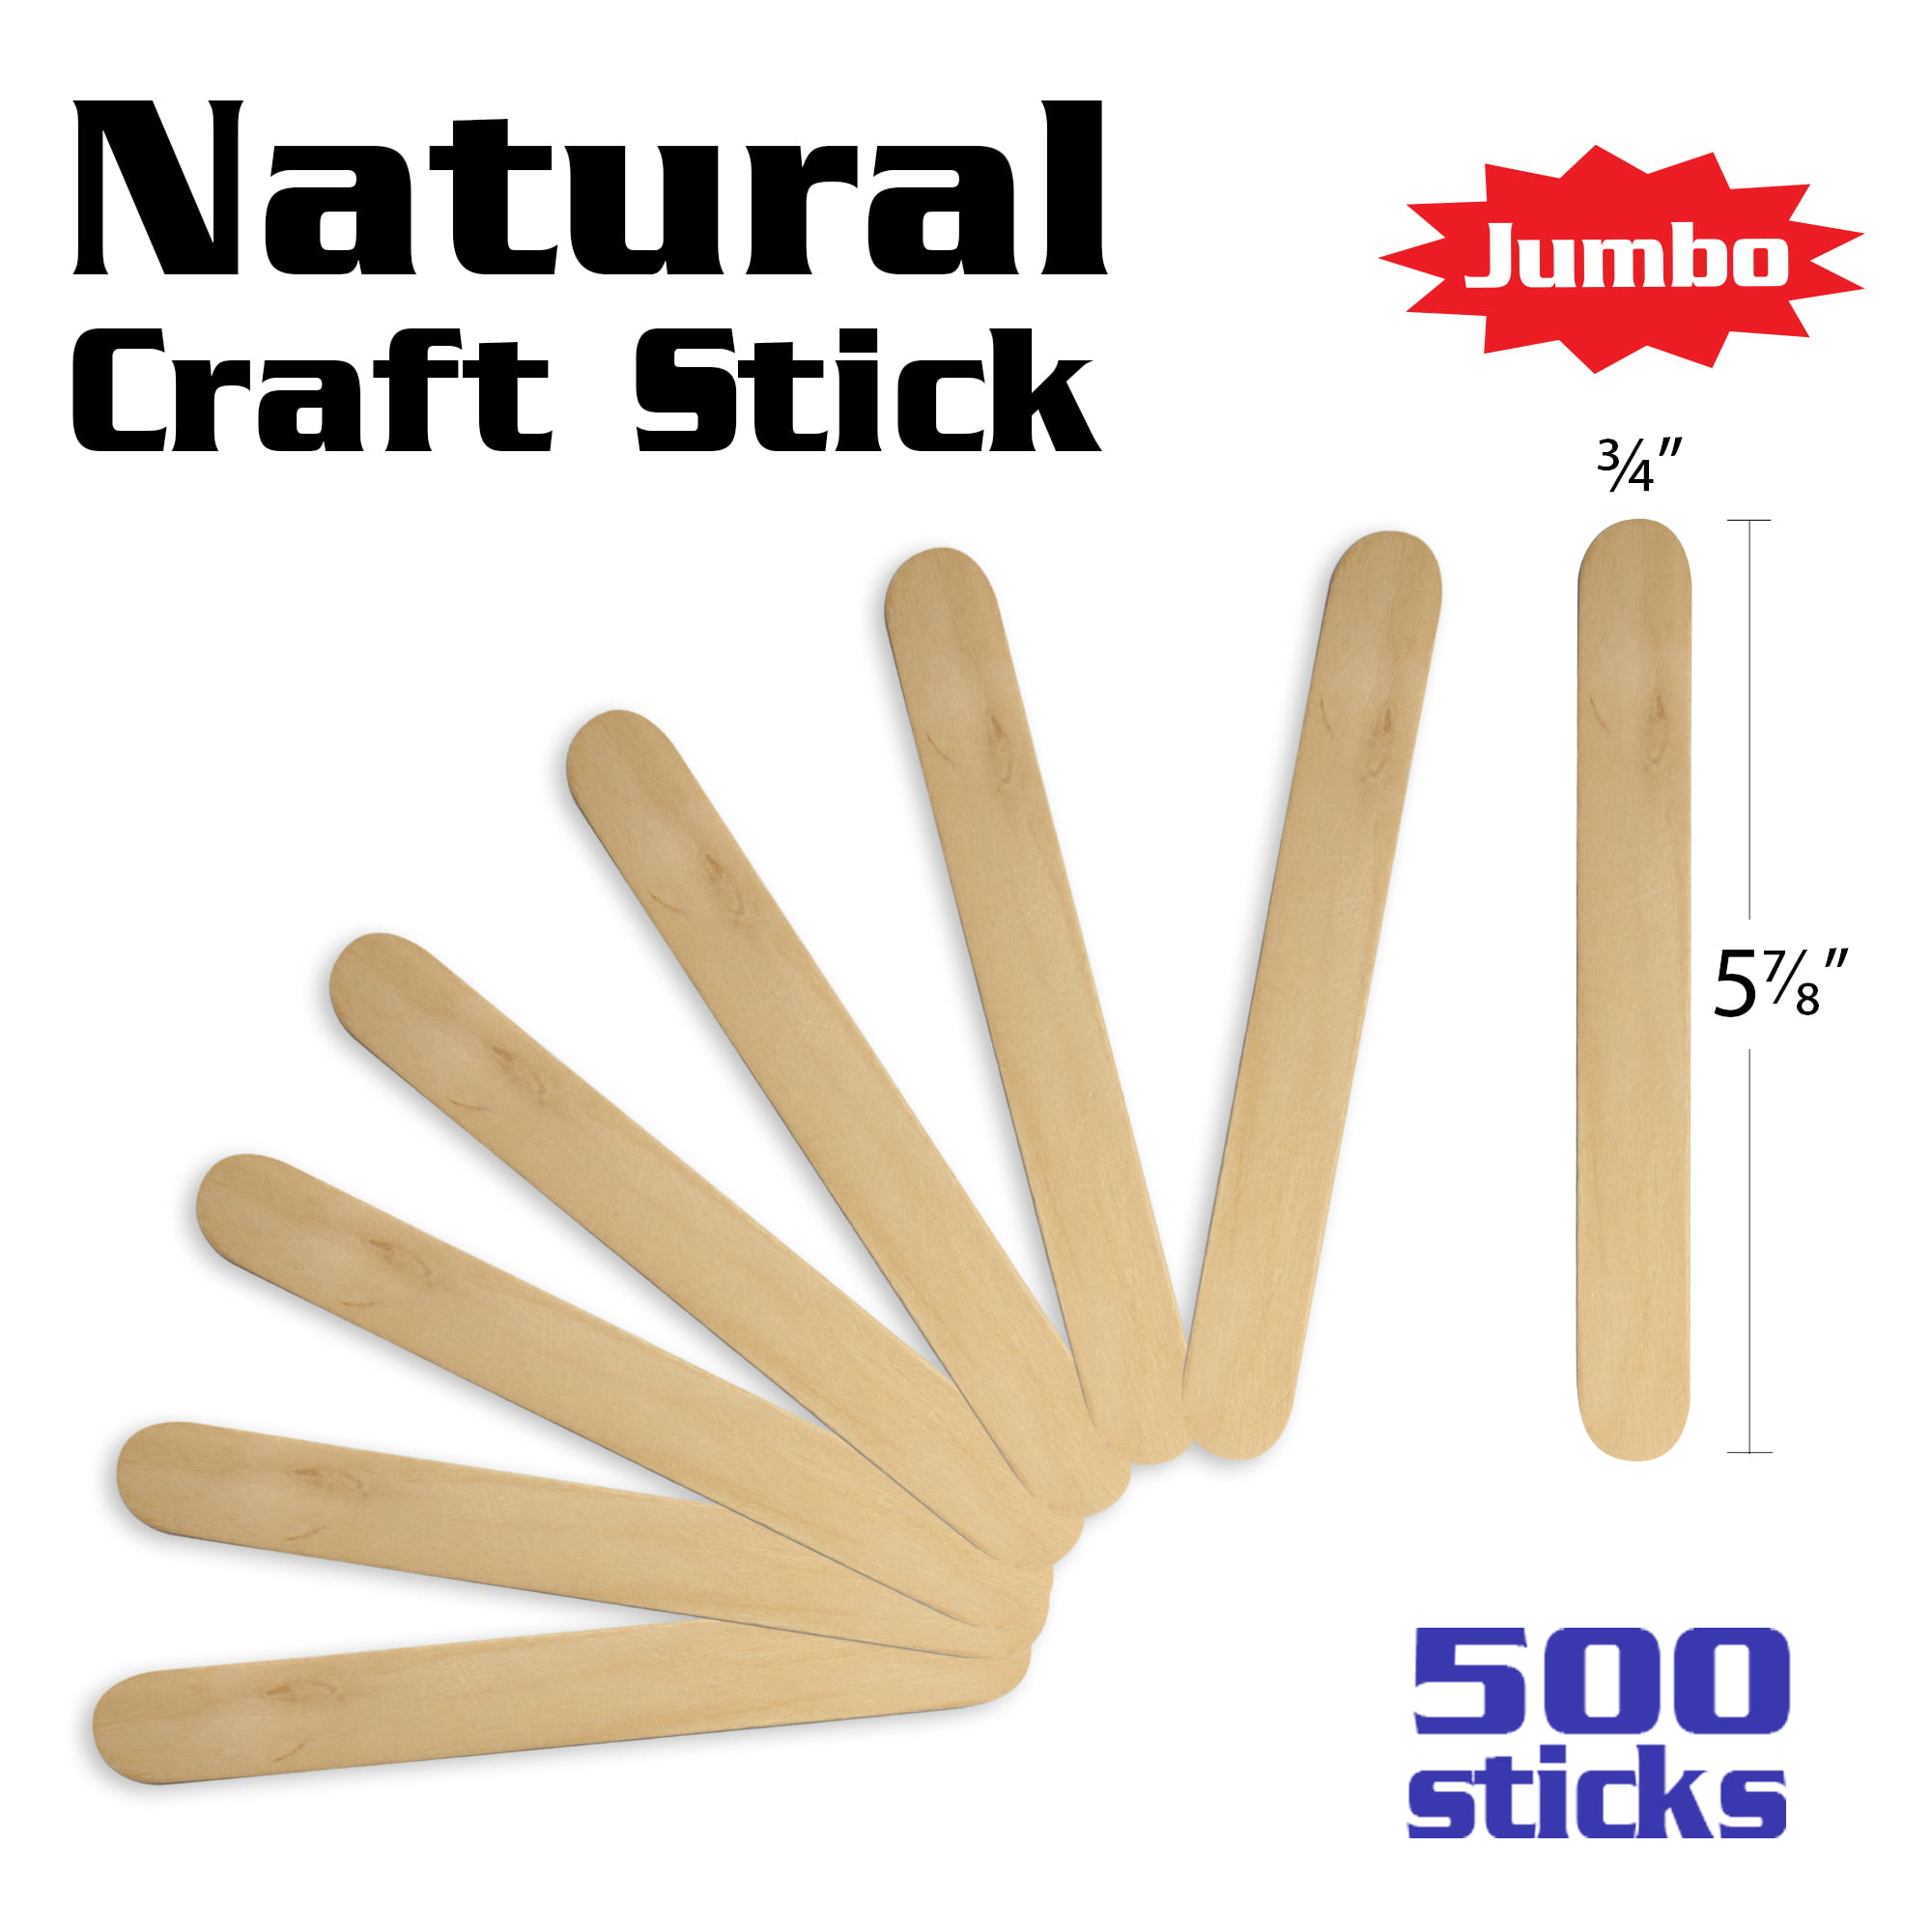 JINCHANG Natural Wood Craft Sticks, Popsicle Sticks for Crafts